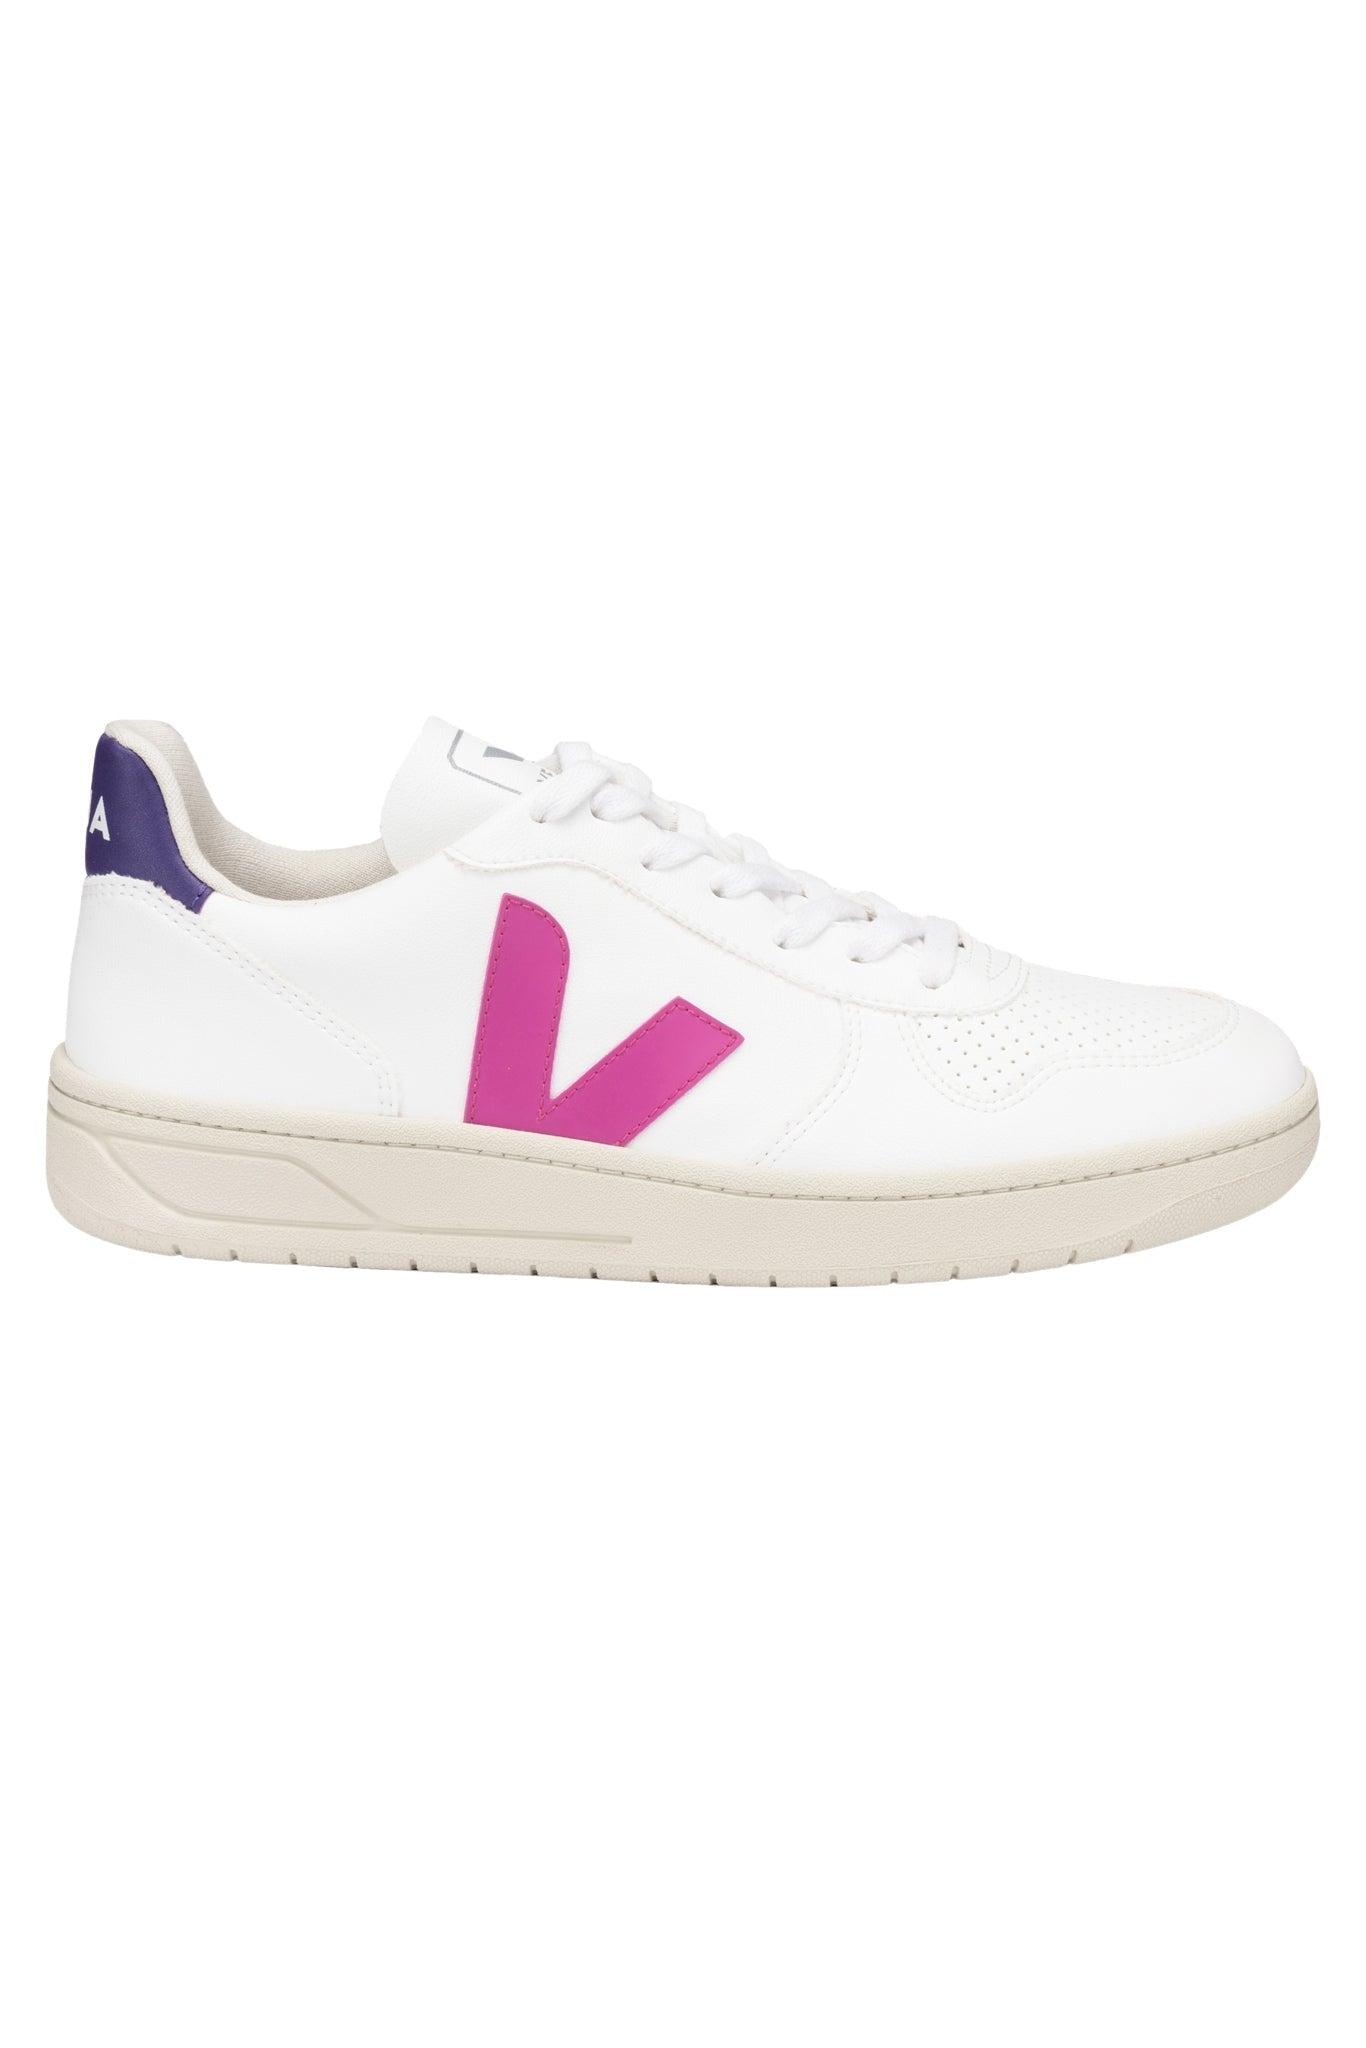 Veja V 10 Cwl White Ultraviolet Purple S Shoes in Pink | Lyst